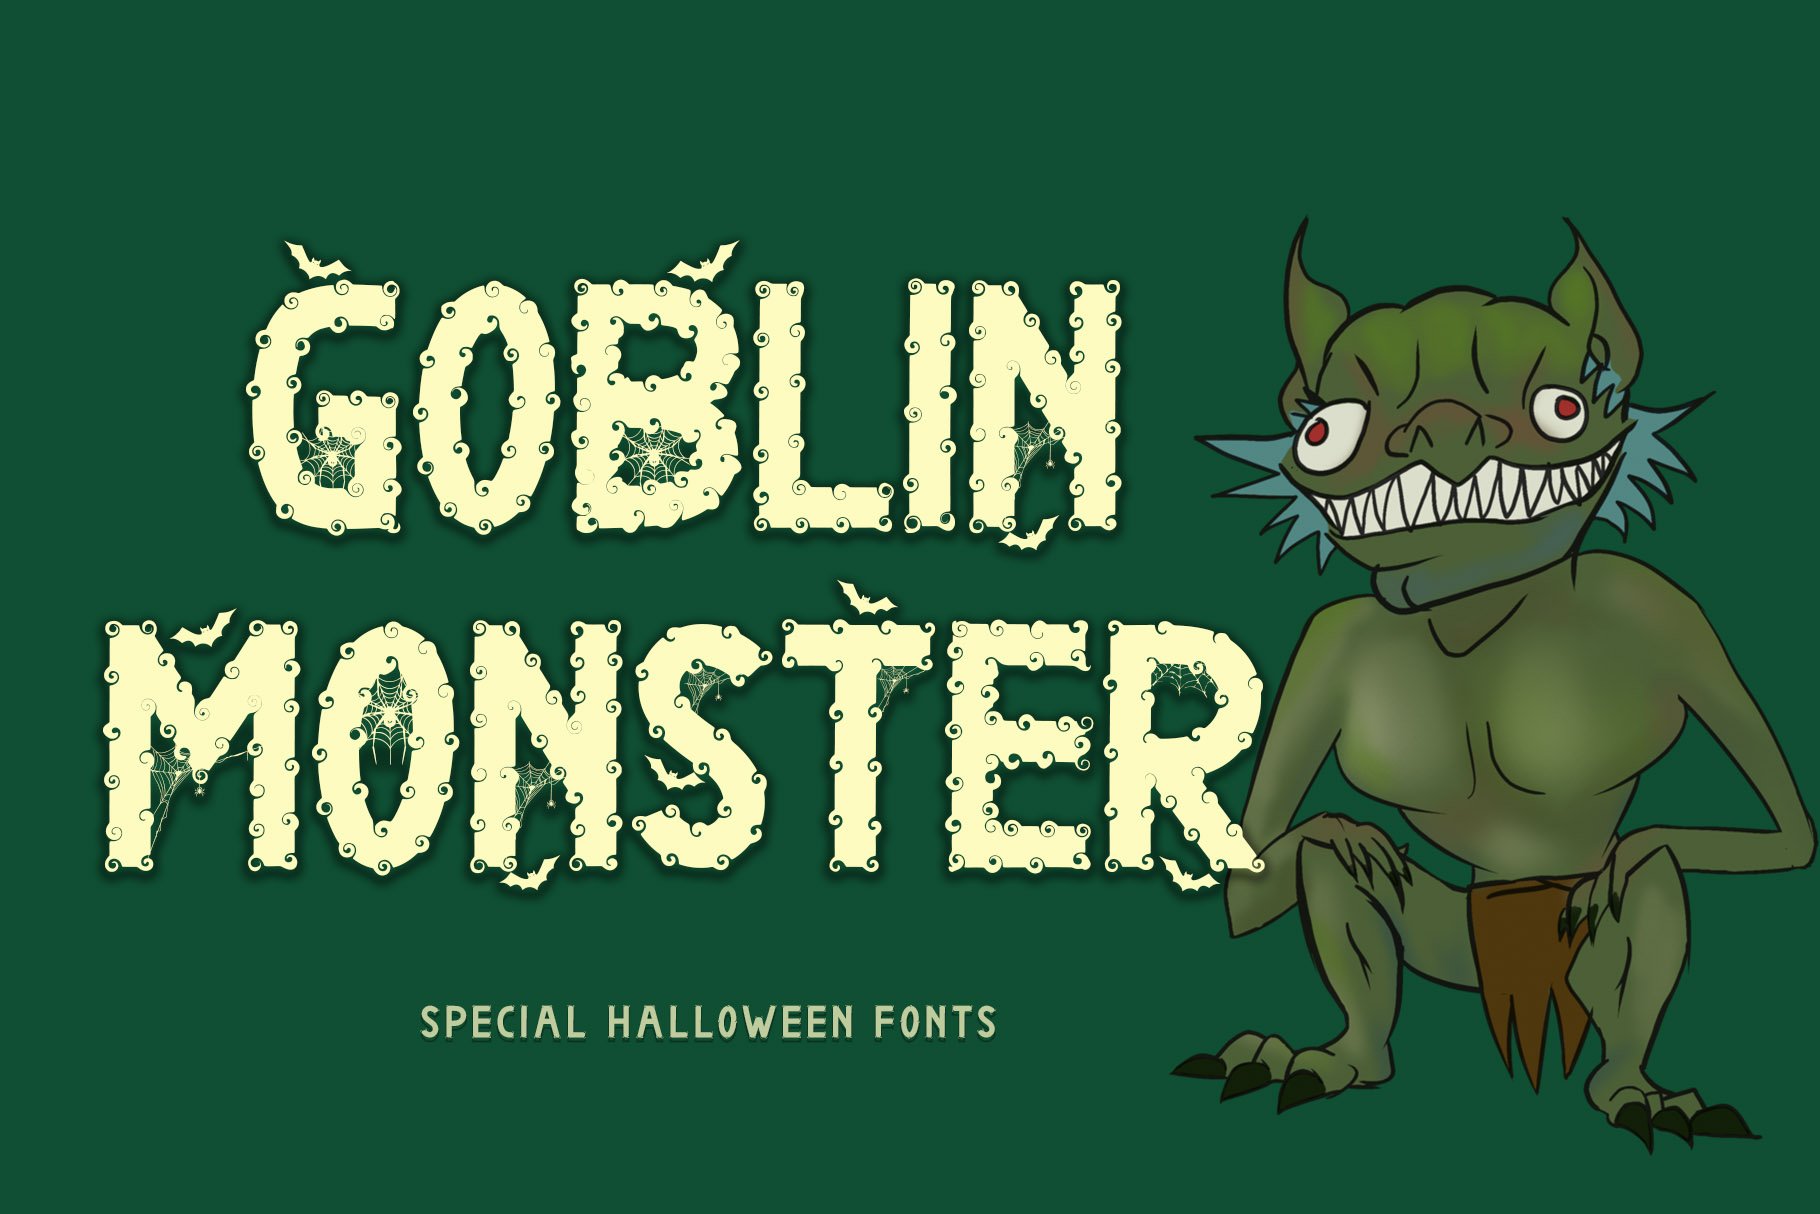 Goblin Monster cover image.